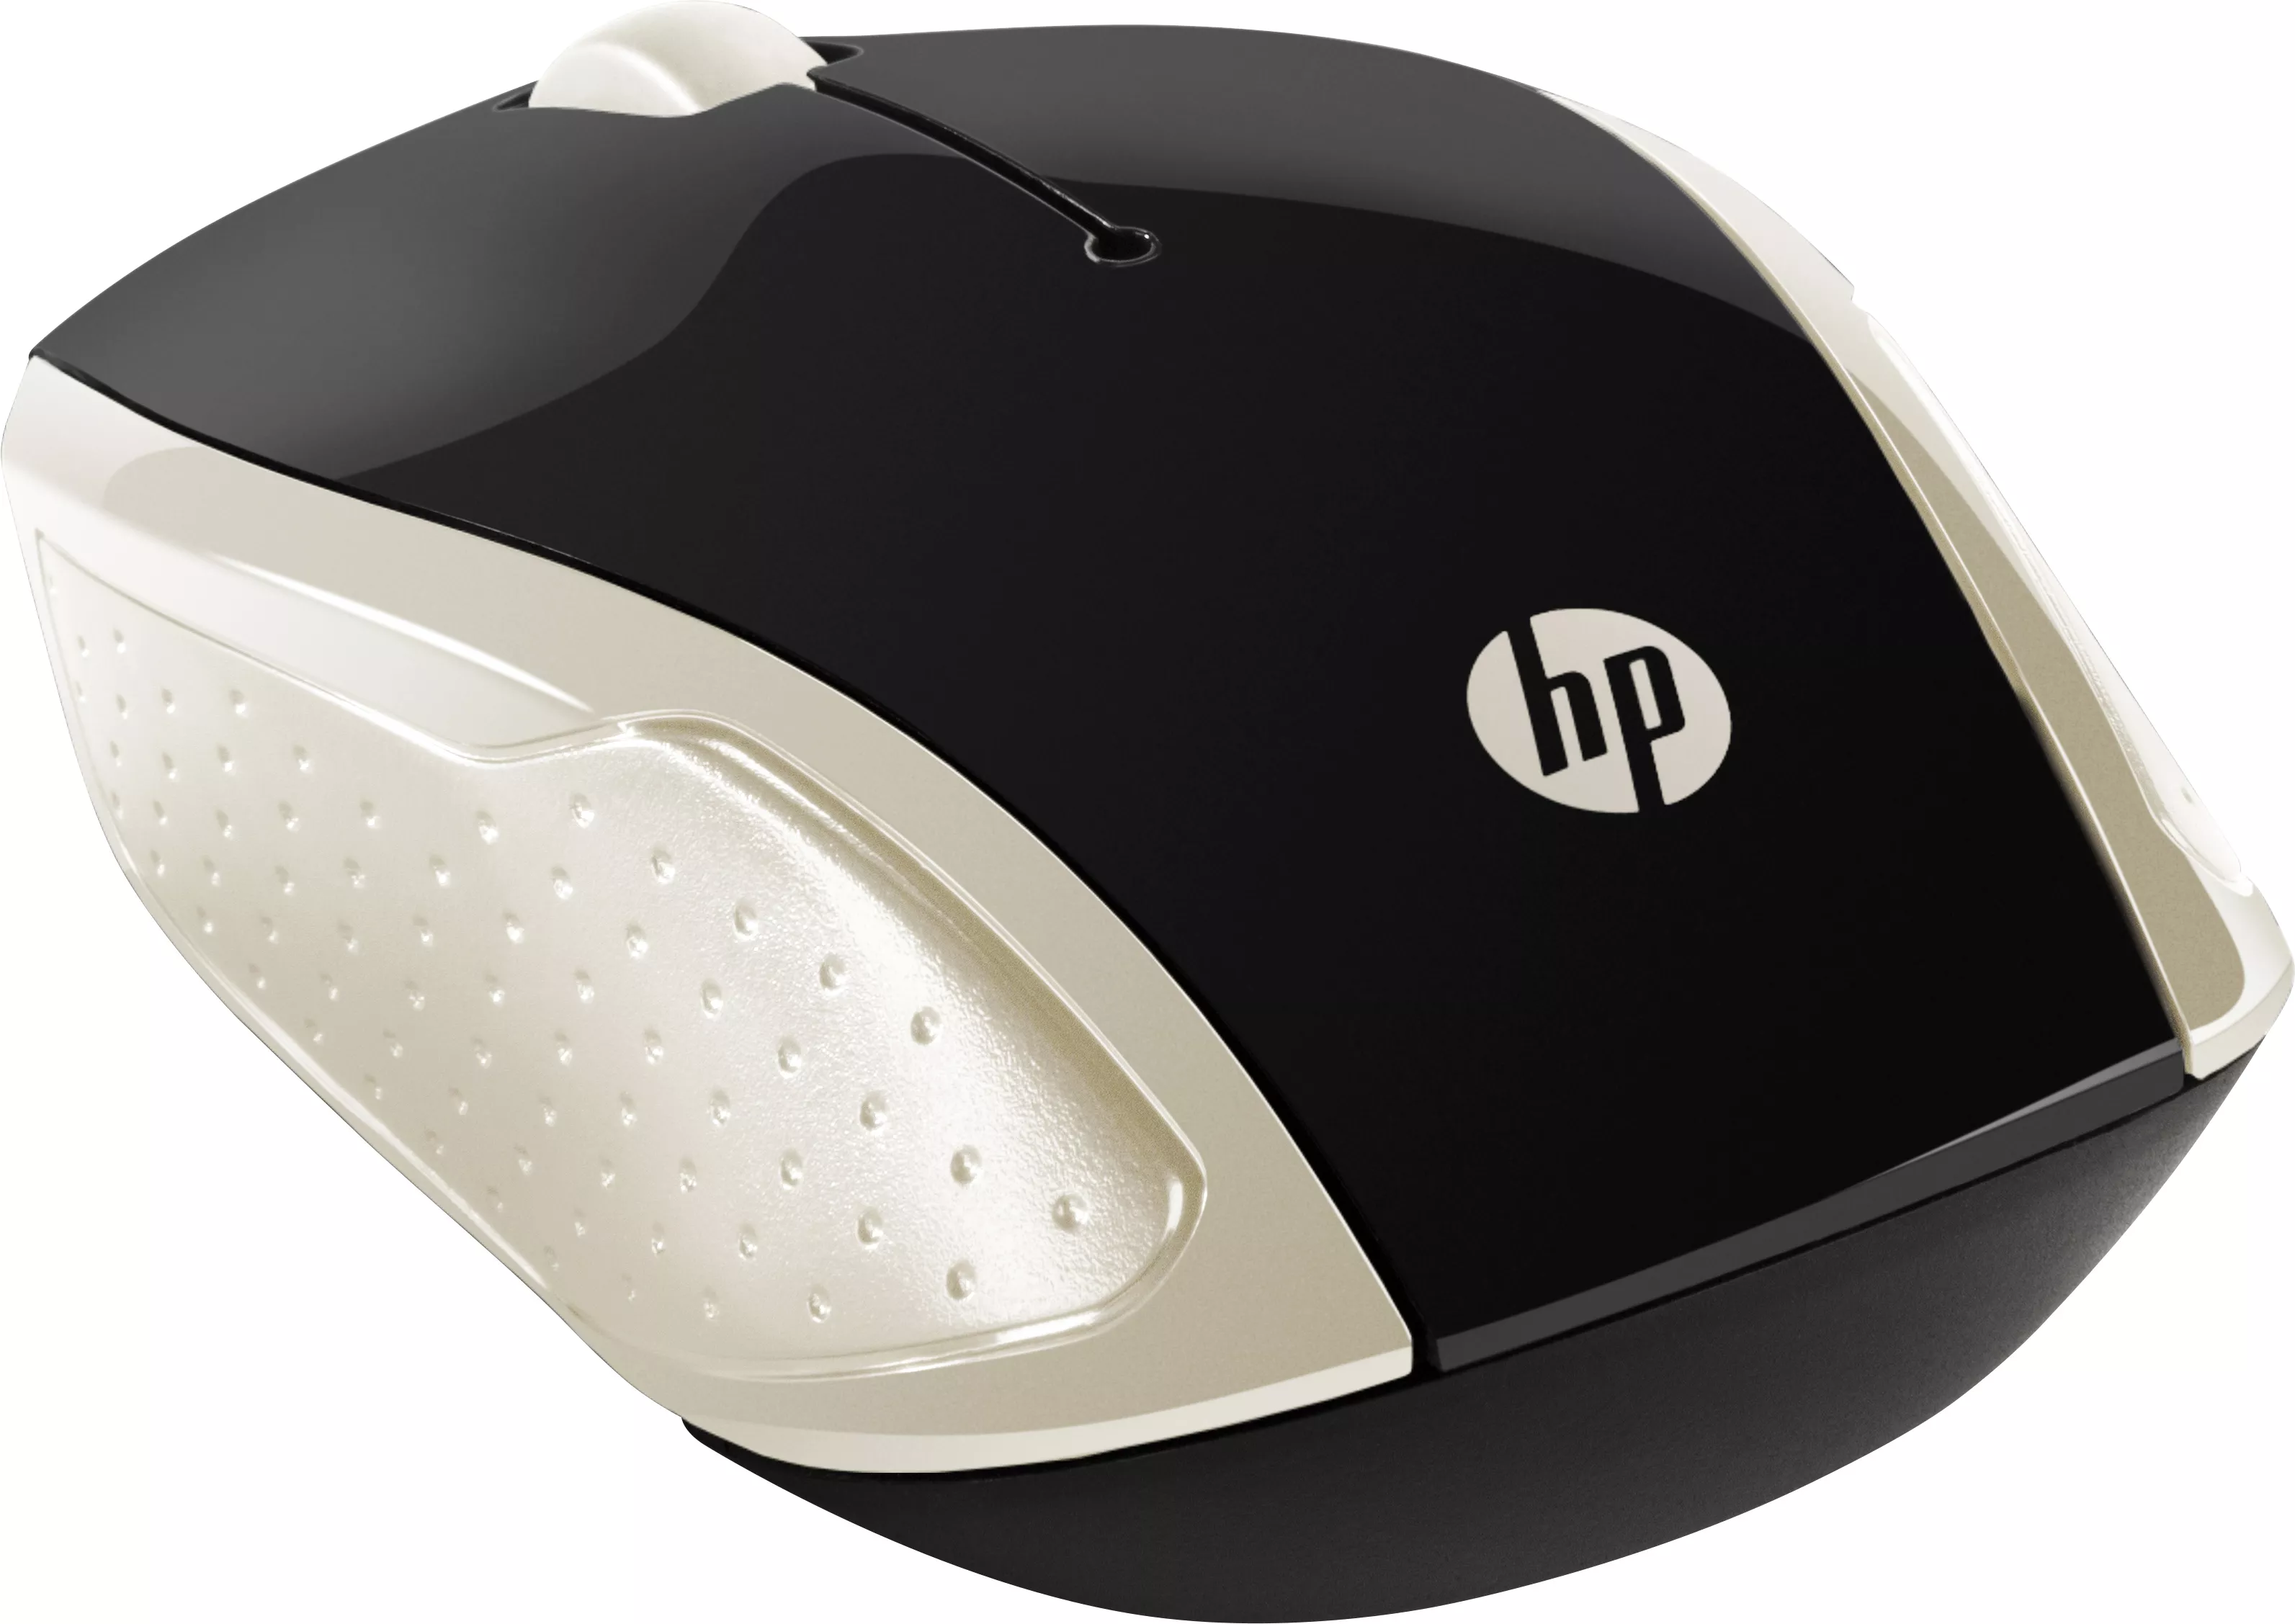 Vente HP Wireless Mouse 200 Silk Gold HP au meilleur prix - visuel 2